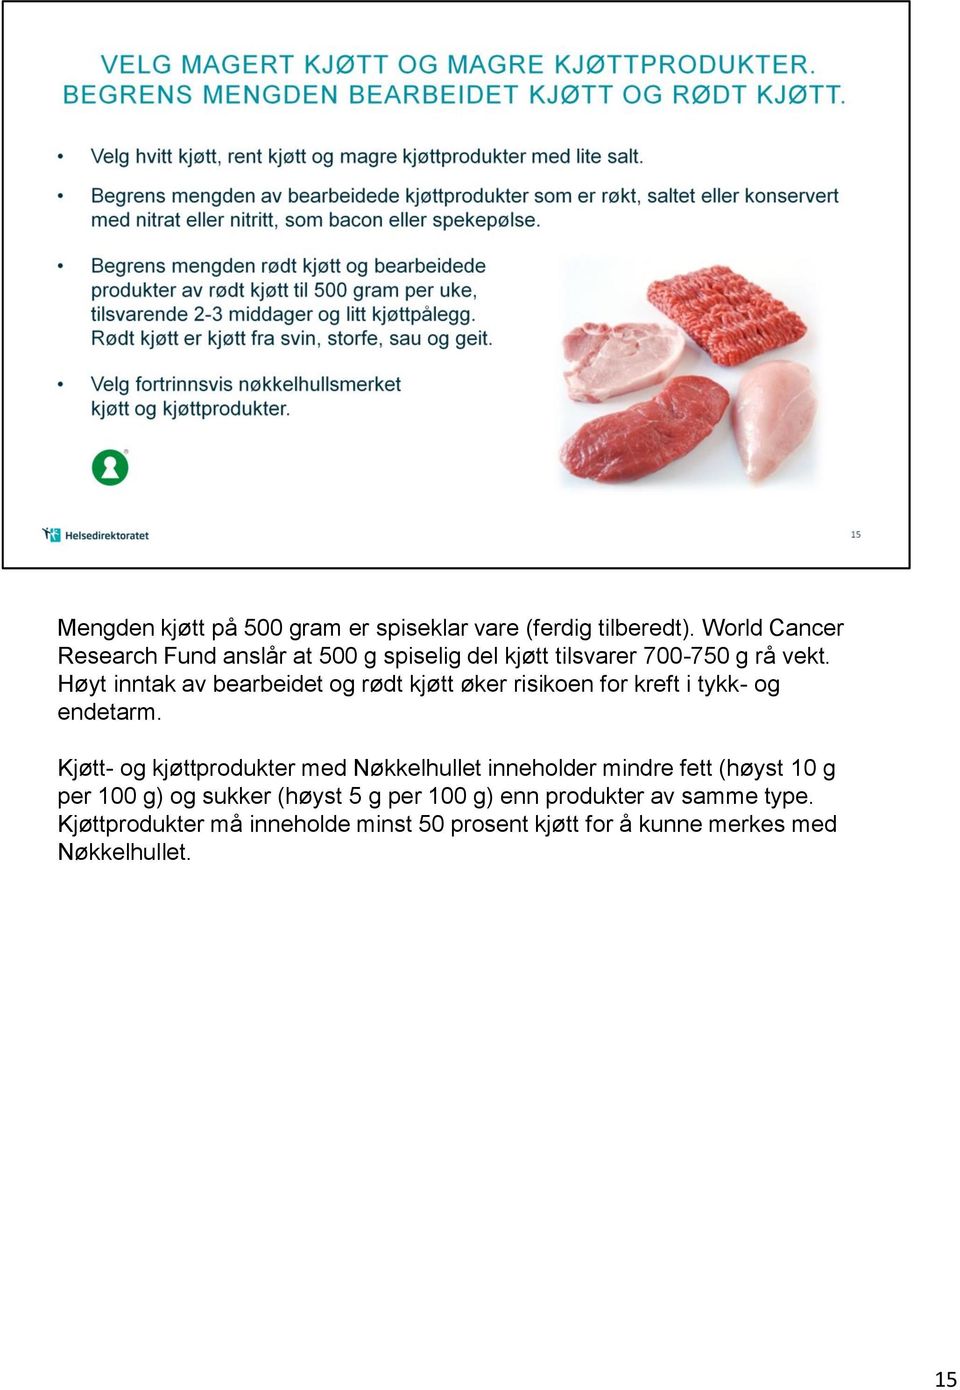 Høyt inntak av bearbeidet og rødt kjøtt øker risikoen for kreft i tykk- og endetarm.